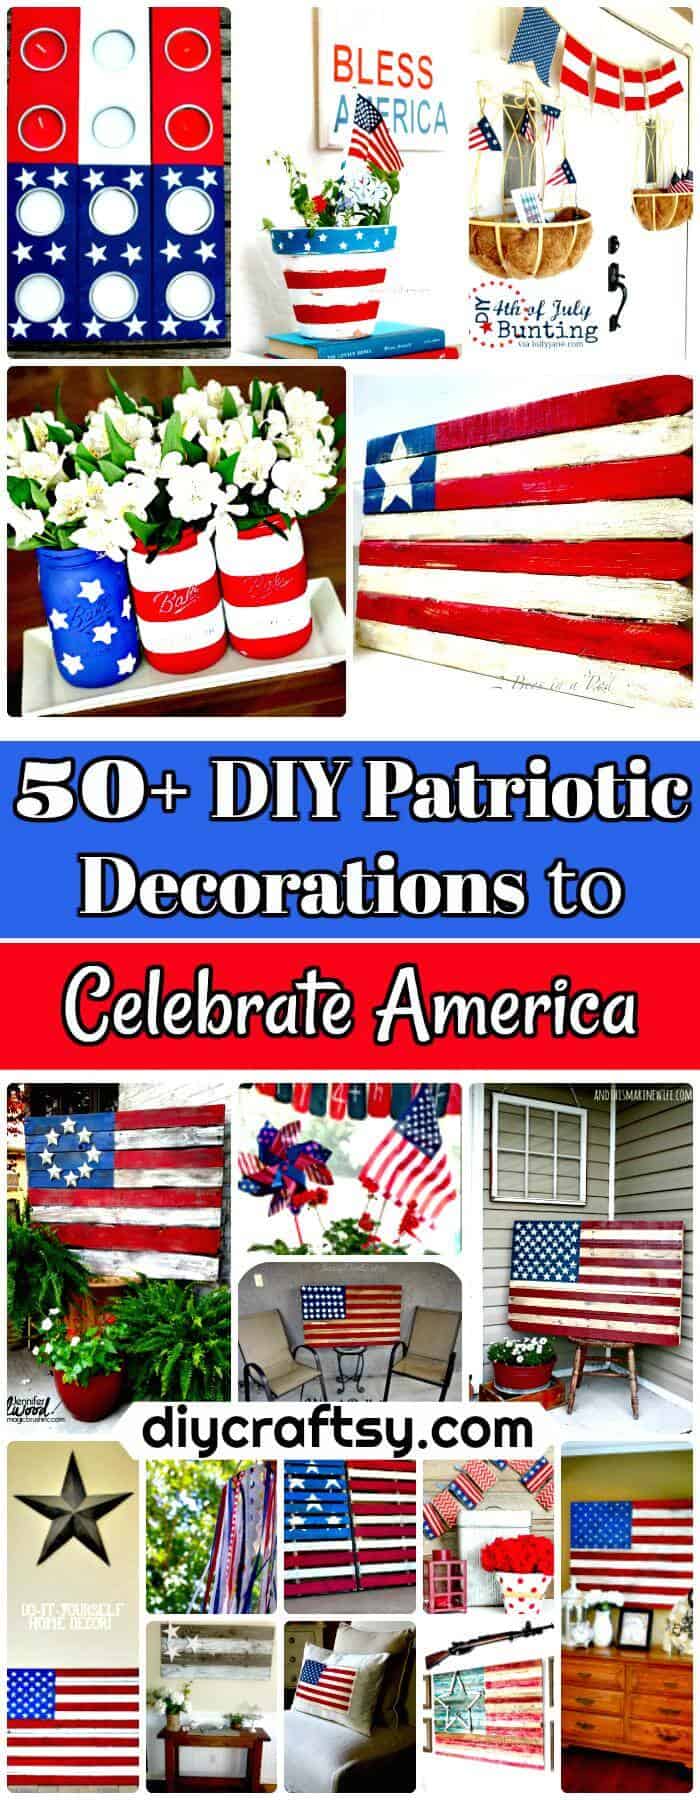 50-DIY-Patriotic-Decorations-to-Celebrate-America